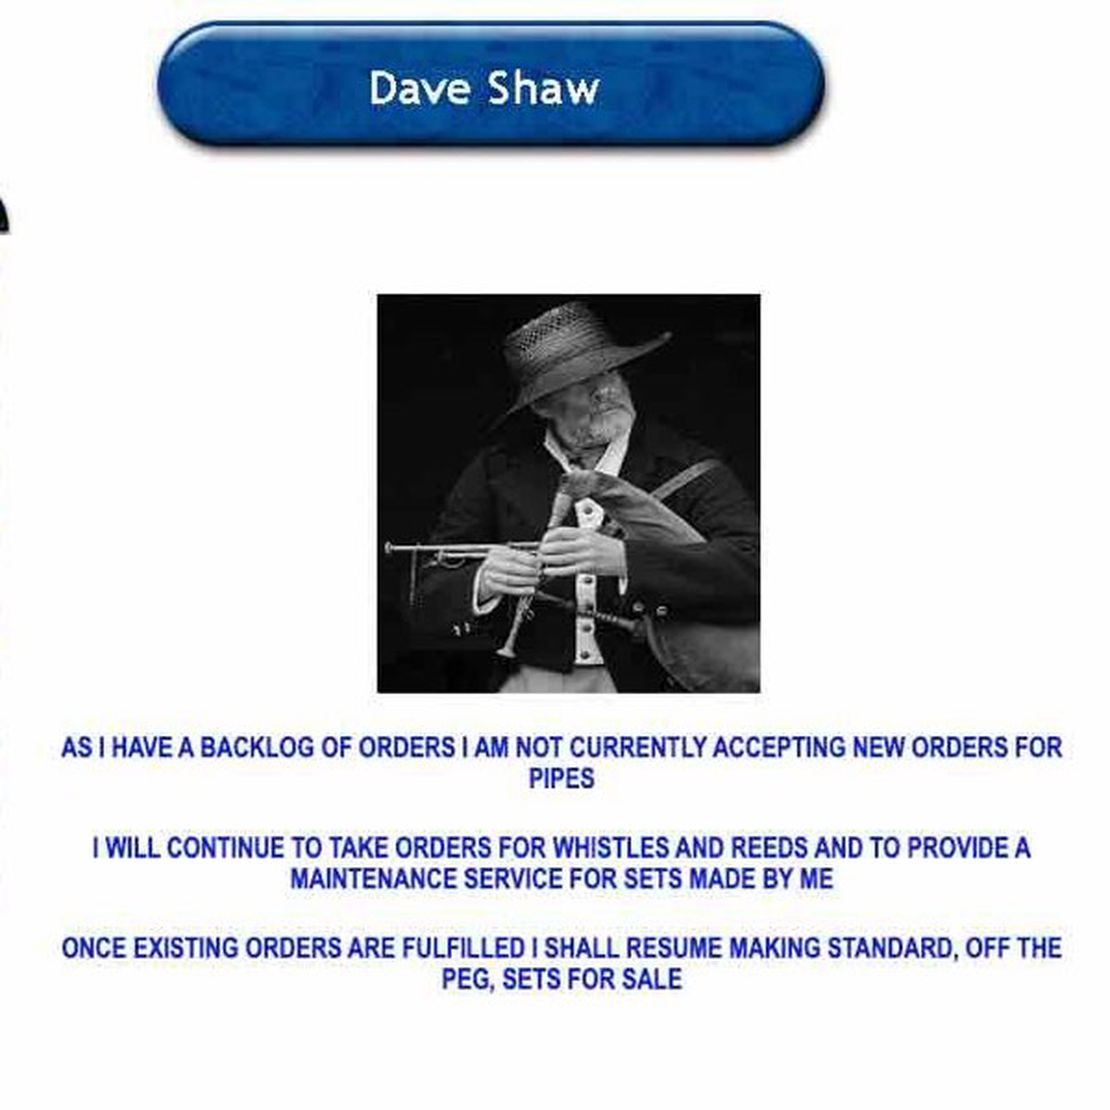 david shaw bagpipes